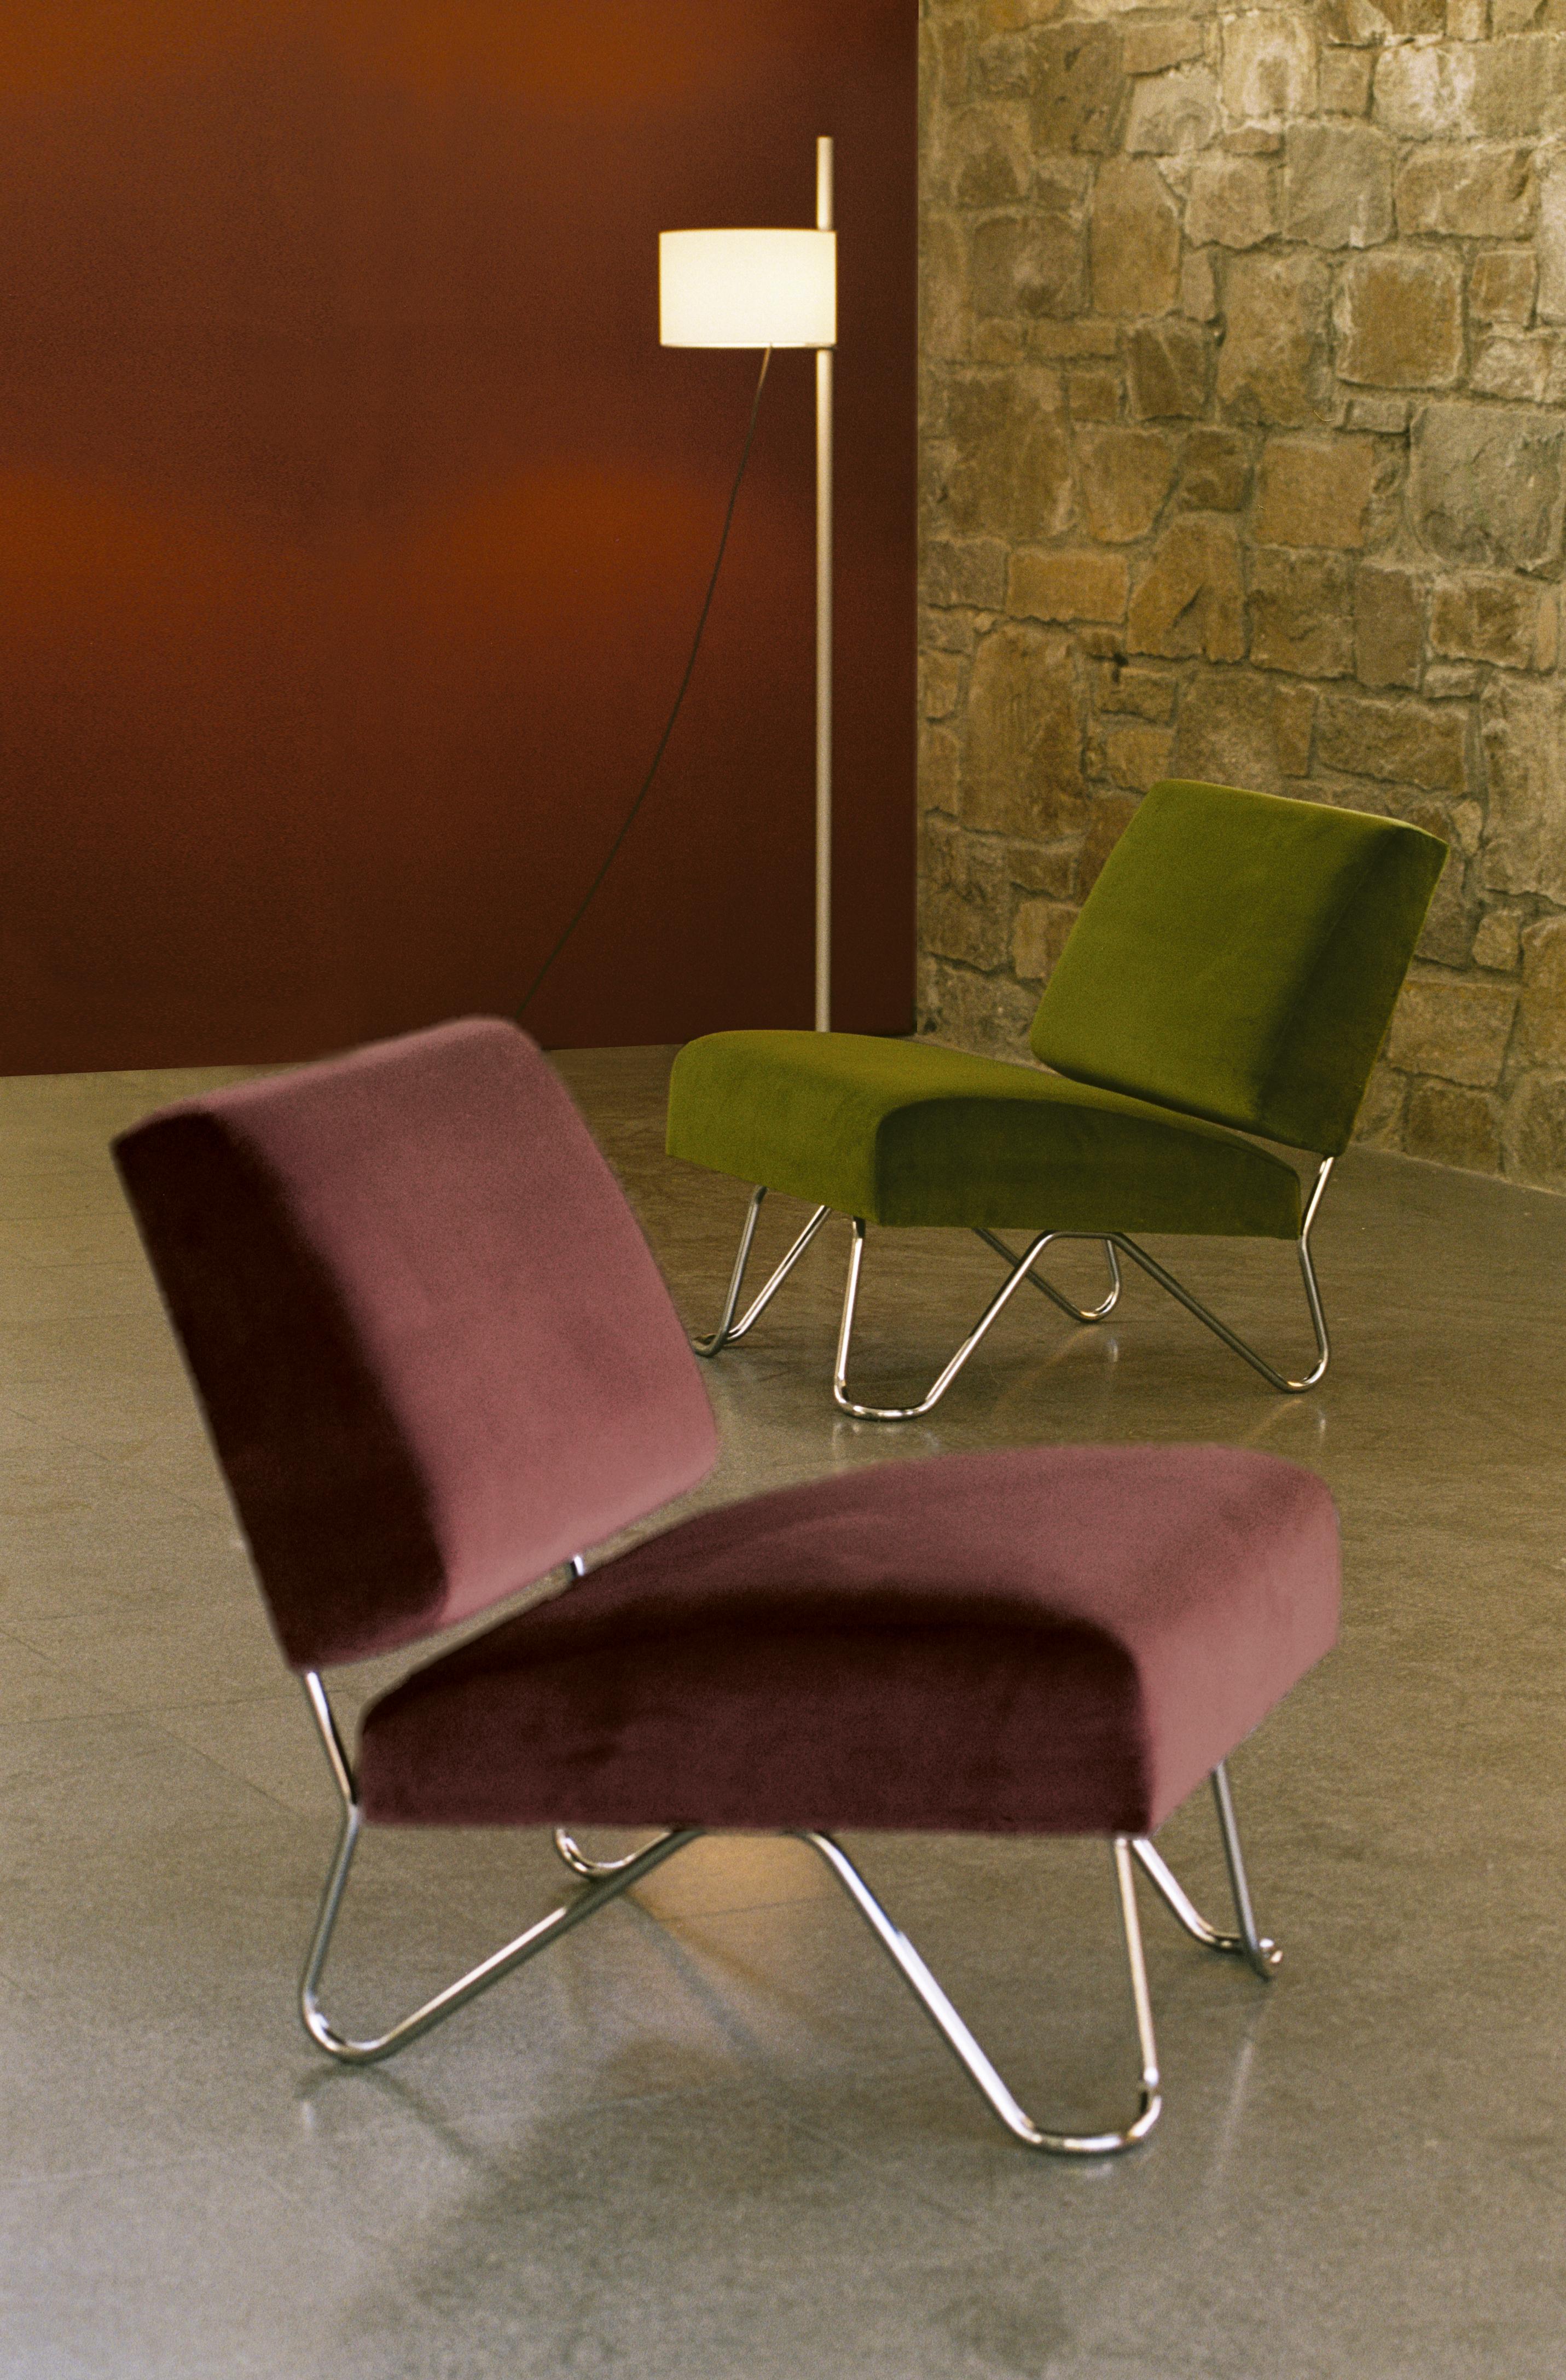 Ibiza lounge chair von Germán Rodríguez Arias
Abmessungen: T 76 x B 62 x H 70 cm
MATERIALIEN: Stahl, Stoff.
Erhältlich in anderen Stoffen.

Ibiza ist eine Beschwörung des Lebensrhythmus auf der gleichnamigen Insel. Das Design besteht aus einem